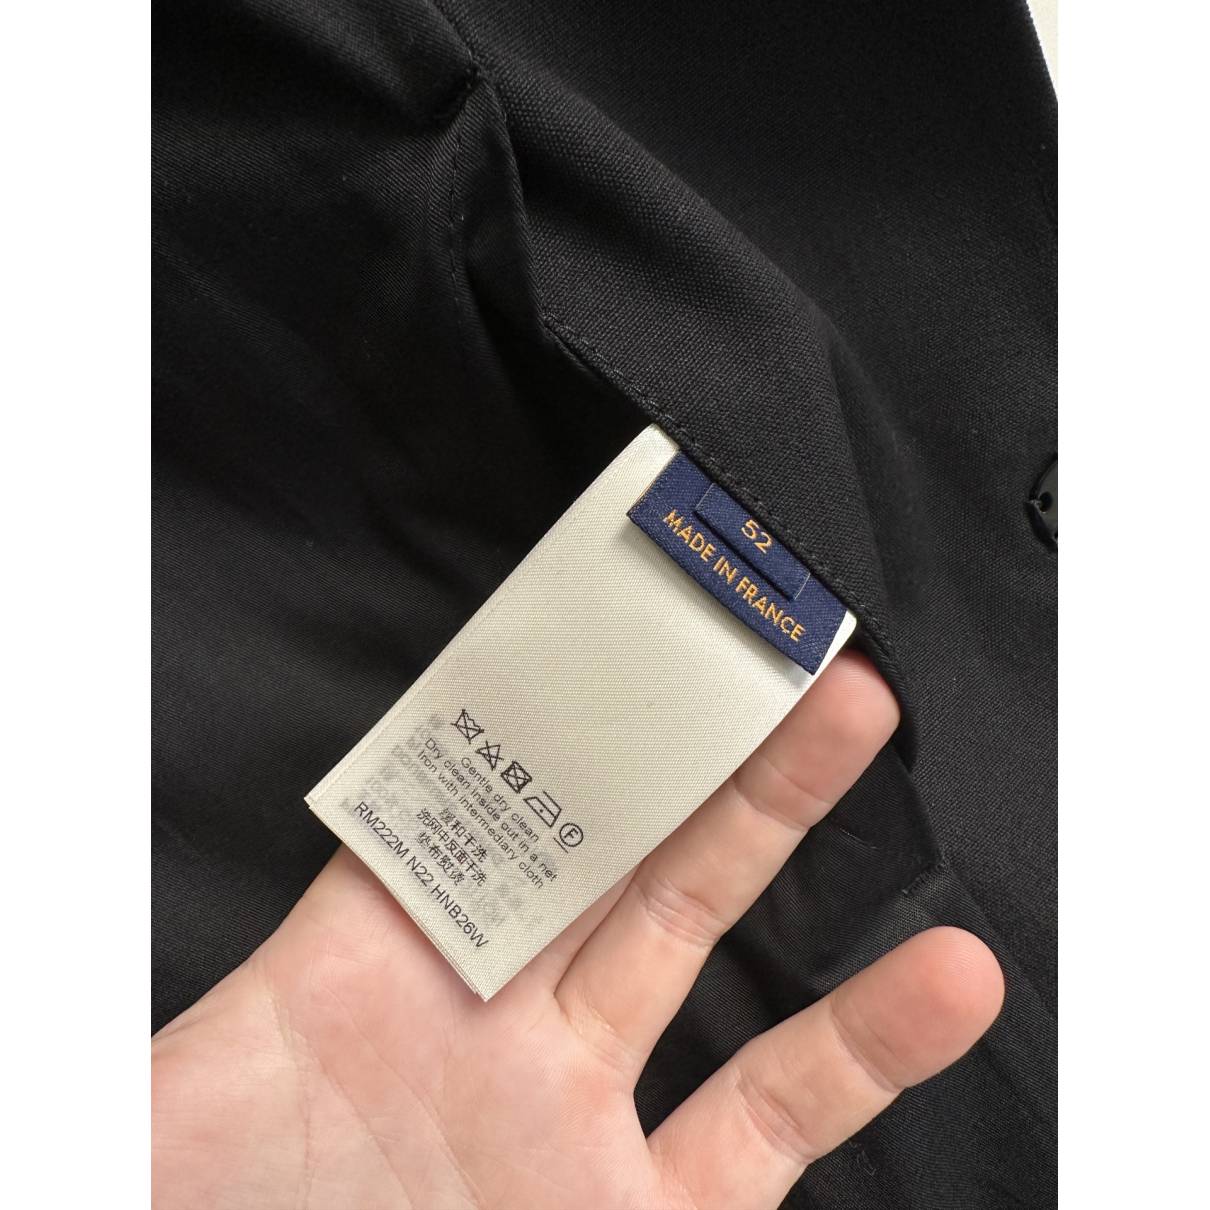 Vest Louis Vuitton Black size 52 FR in Cotton - 27955101